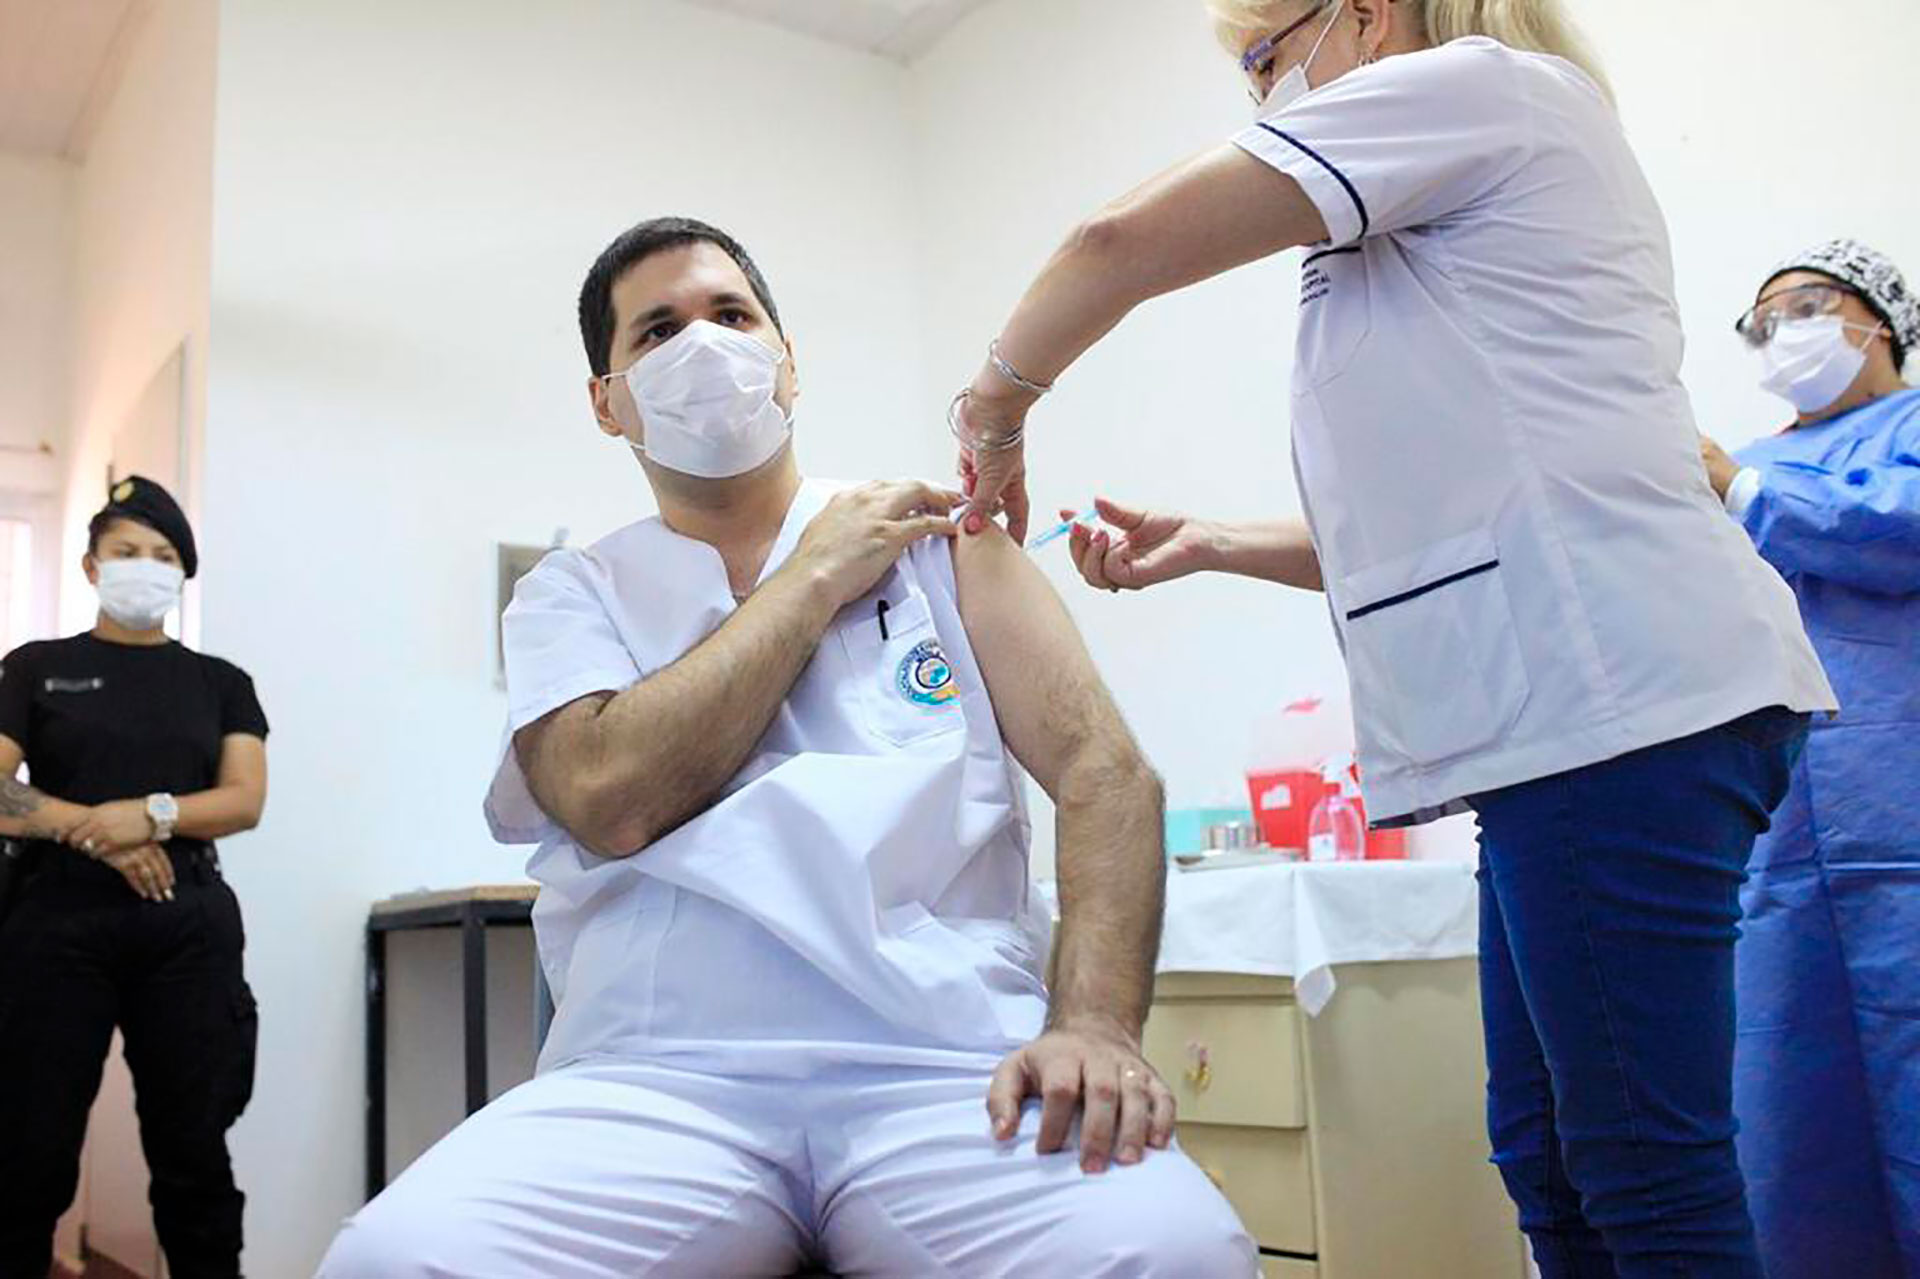 El plan de vacunación contra el COVID-19 en Argentina empezó el 29 de diciembre. Se demoraron las aplicaciones por la escasez de dosis de vacunas/ (Ministerio de Salud de la Nación Argentina)